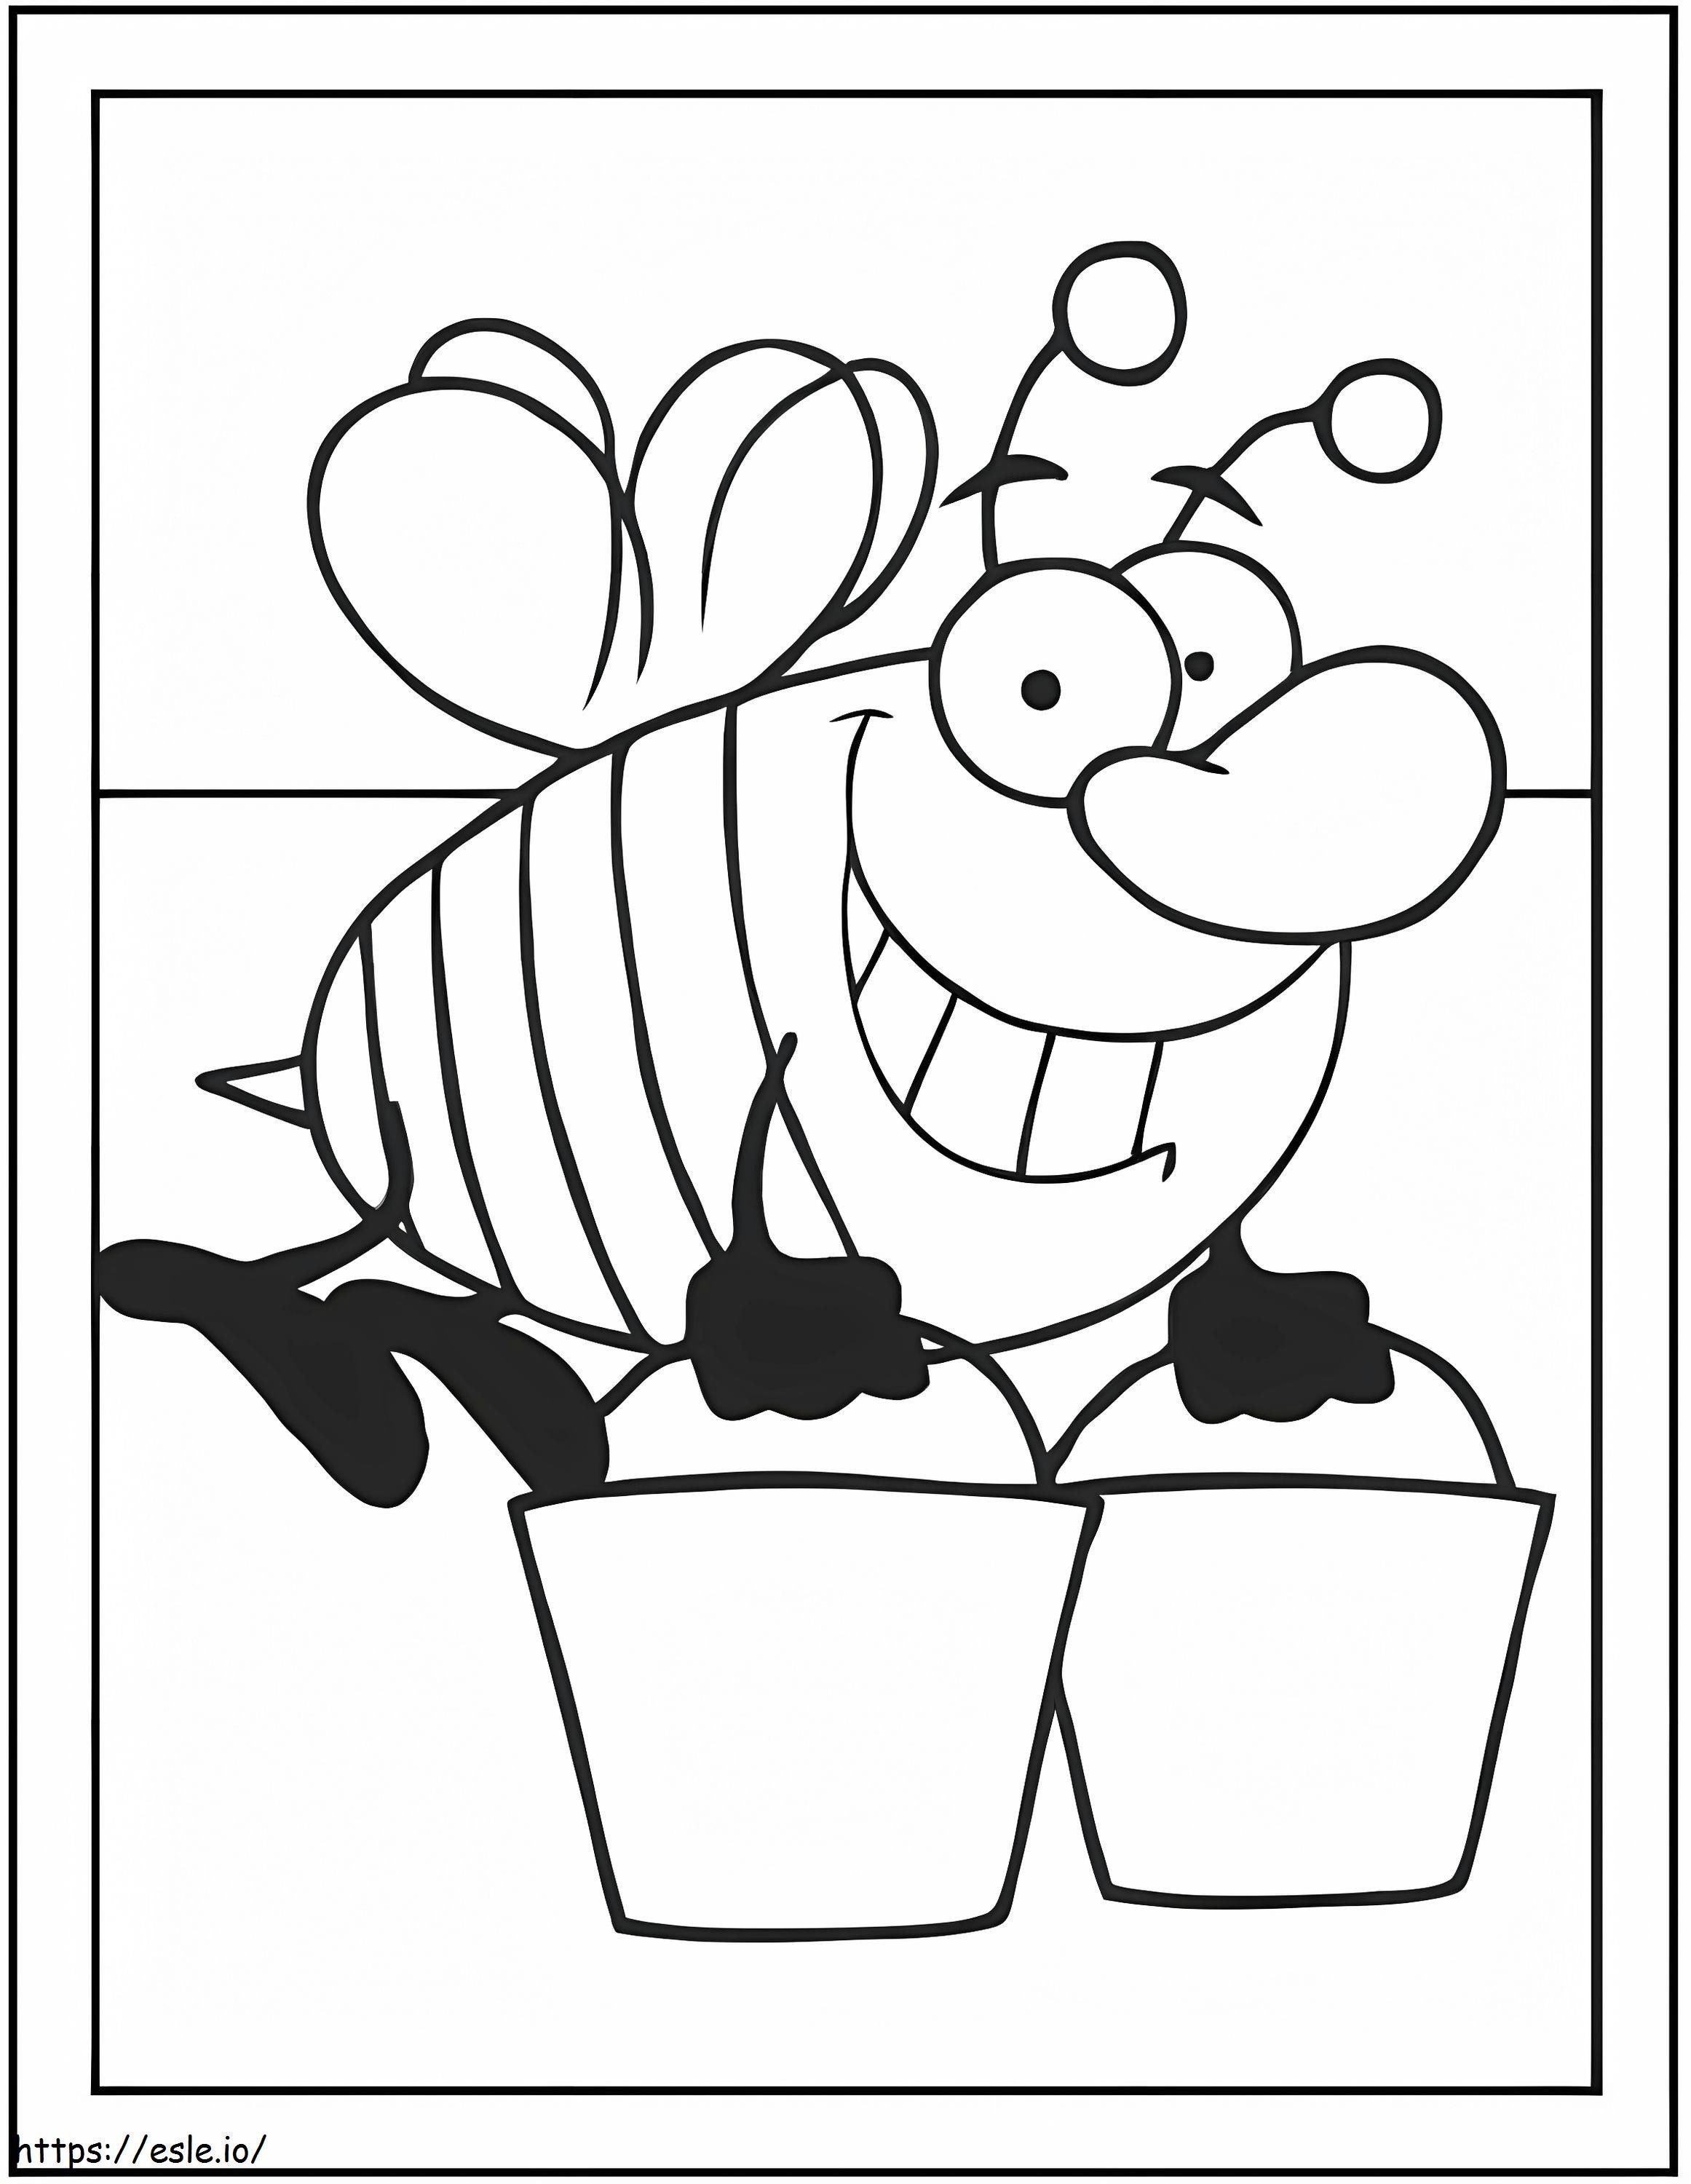 Pszczoła Niosąca Dwa Wiadra kolorowanka